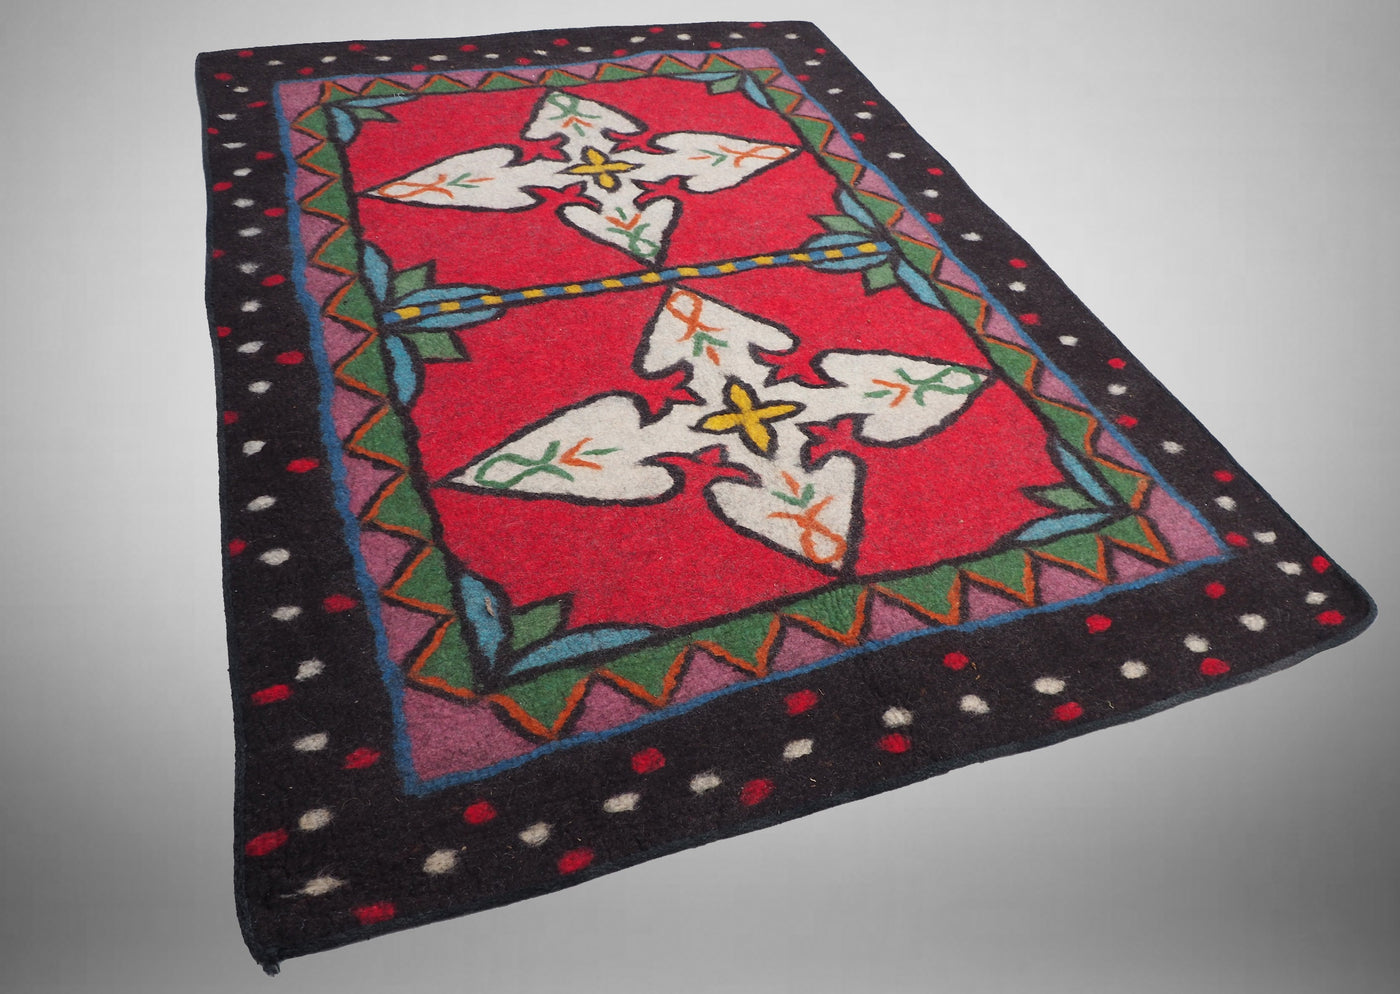 212x151 cm orient Teppich Nomaden handgearbeitete Turkmenische nomanden Jurten Zelt Filzteppich Filz koshma Afghanistan shyrdak Nr:696  Orientsbazar   